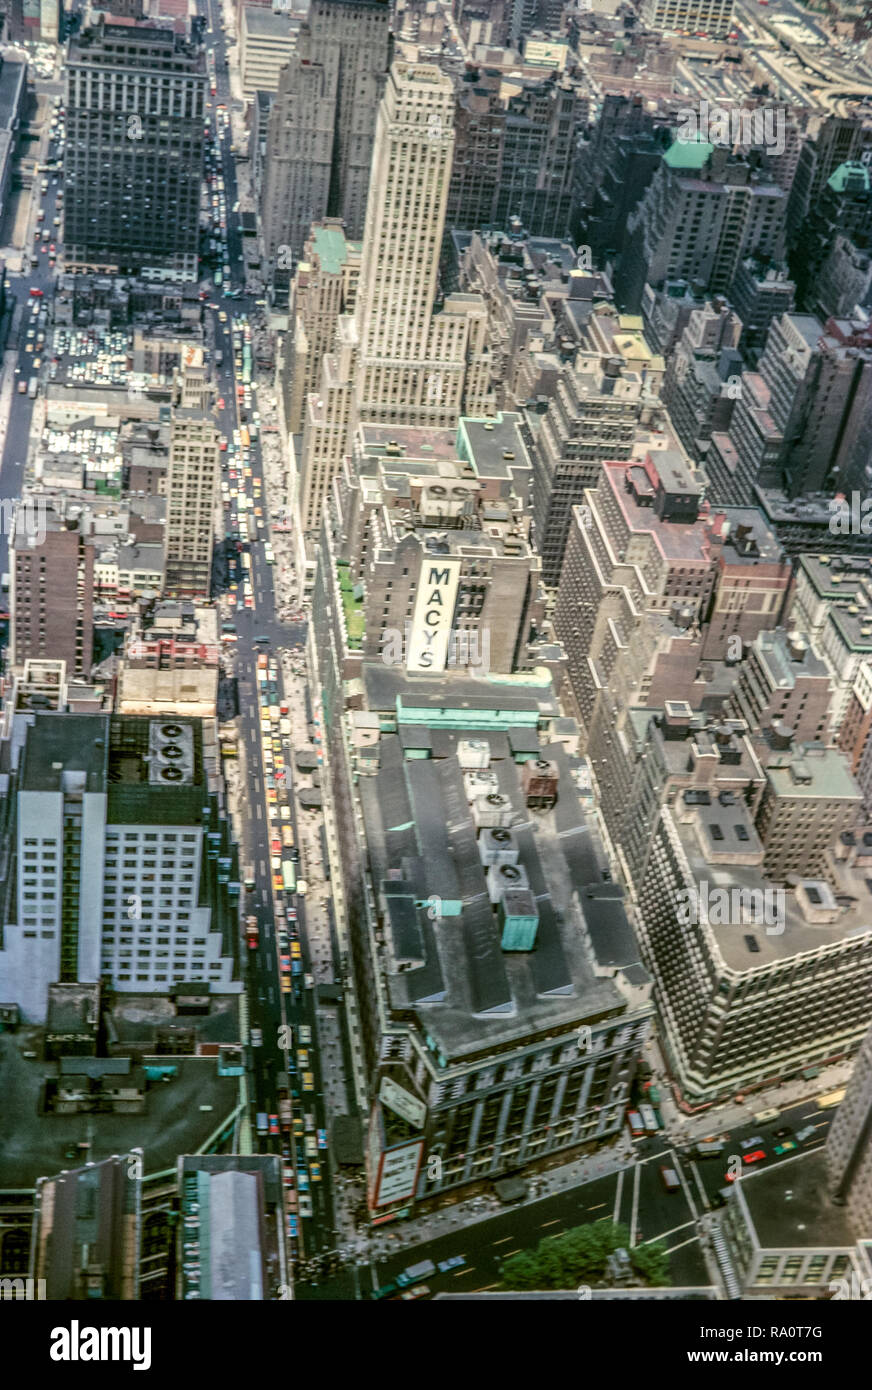 Juin 1964. Vue depuis le haut de l'Empire State Building jusqu'à la 34e Rue avec du grand magasin Macy's au premier plan. Banque D'Images